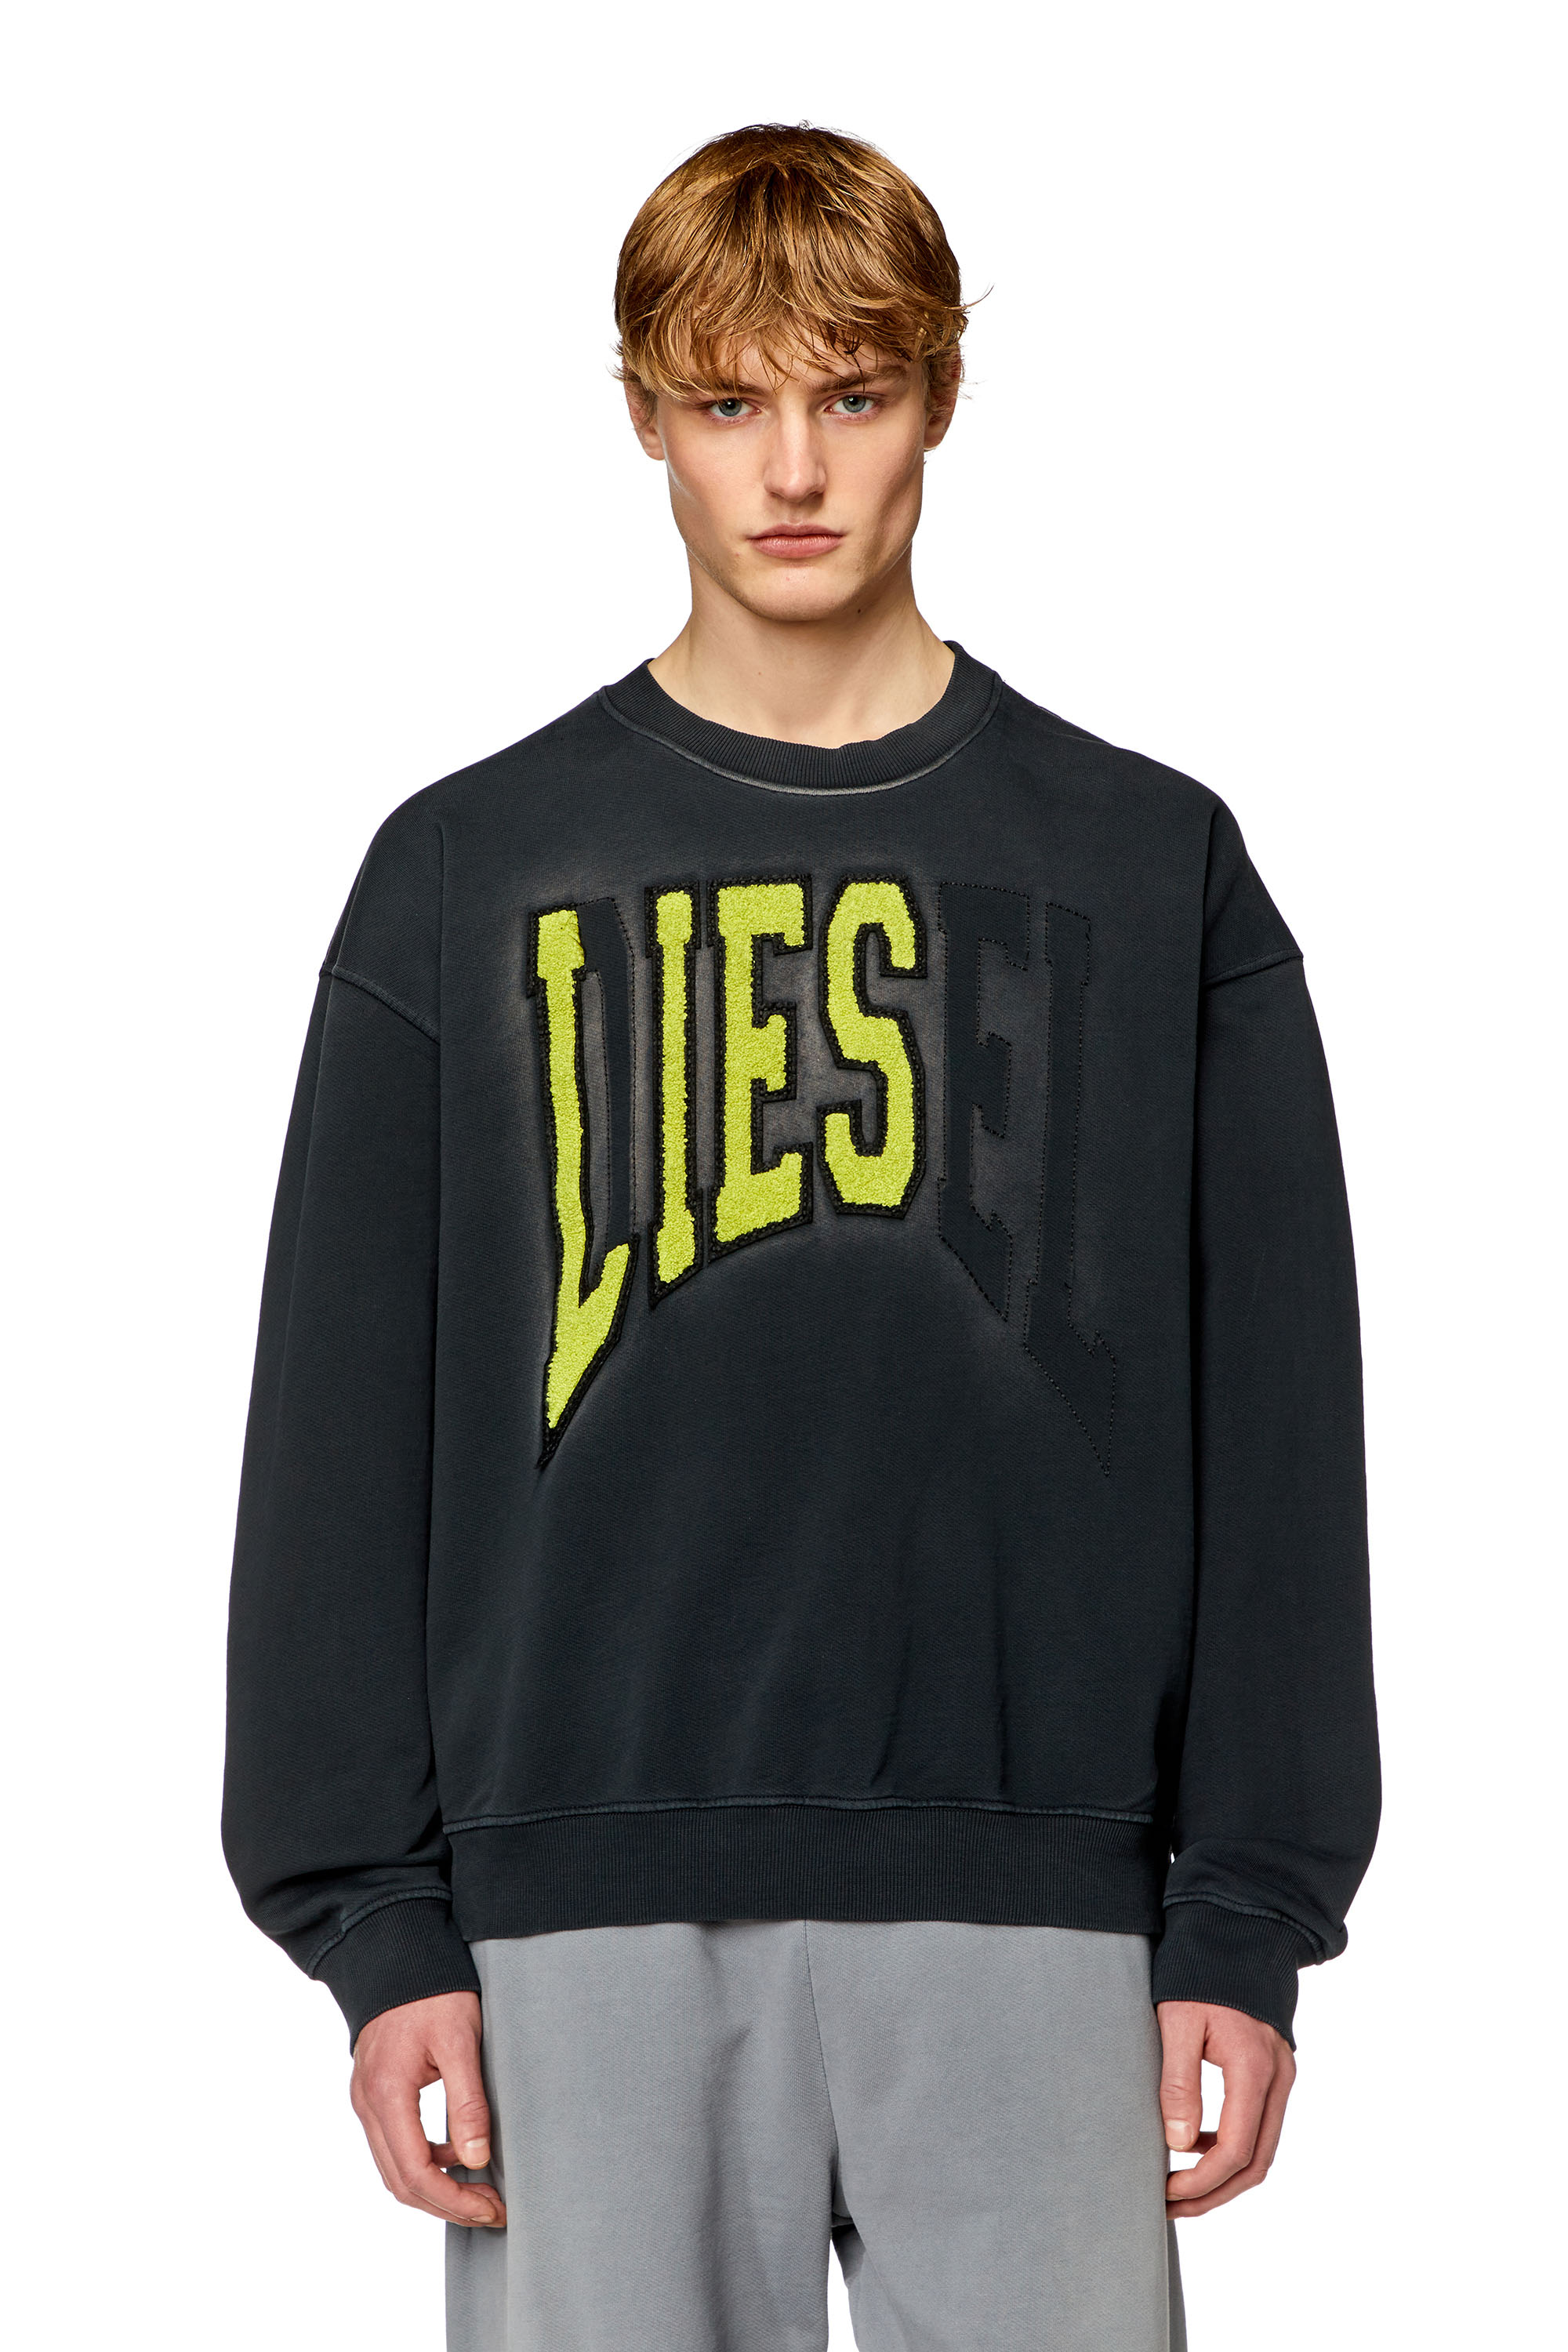 Diesel - Sweat-shirt style universitaire avec empiècements LIES - Pull Cotton - Homme - Noir